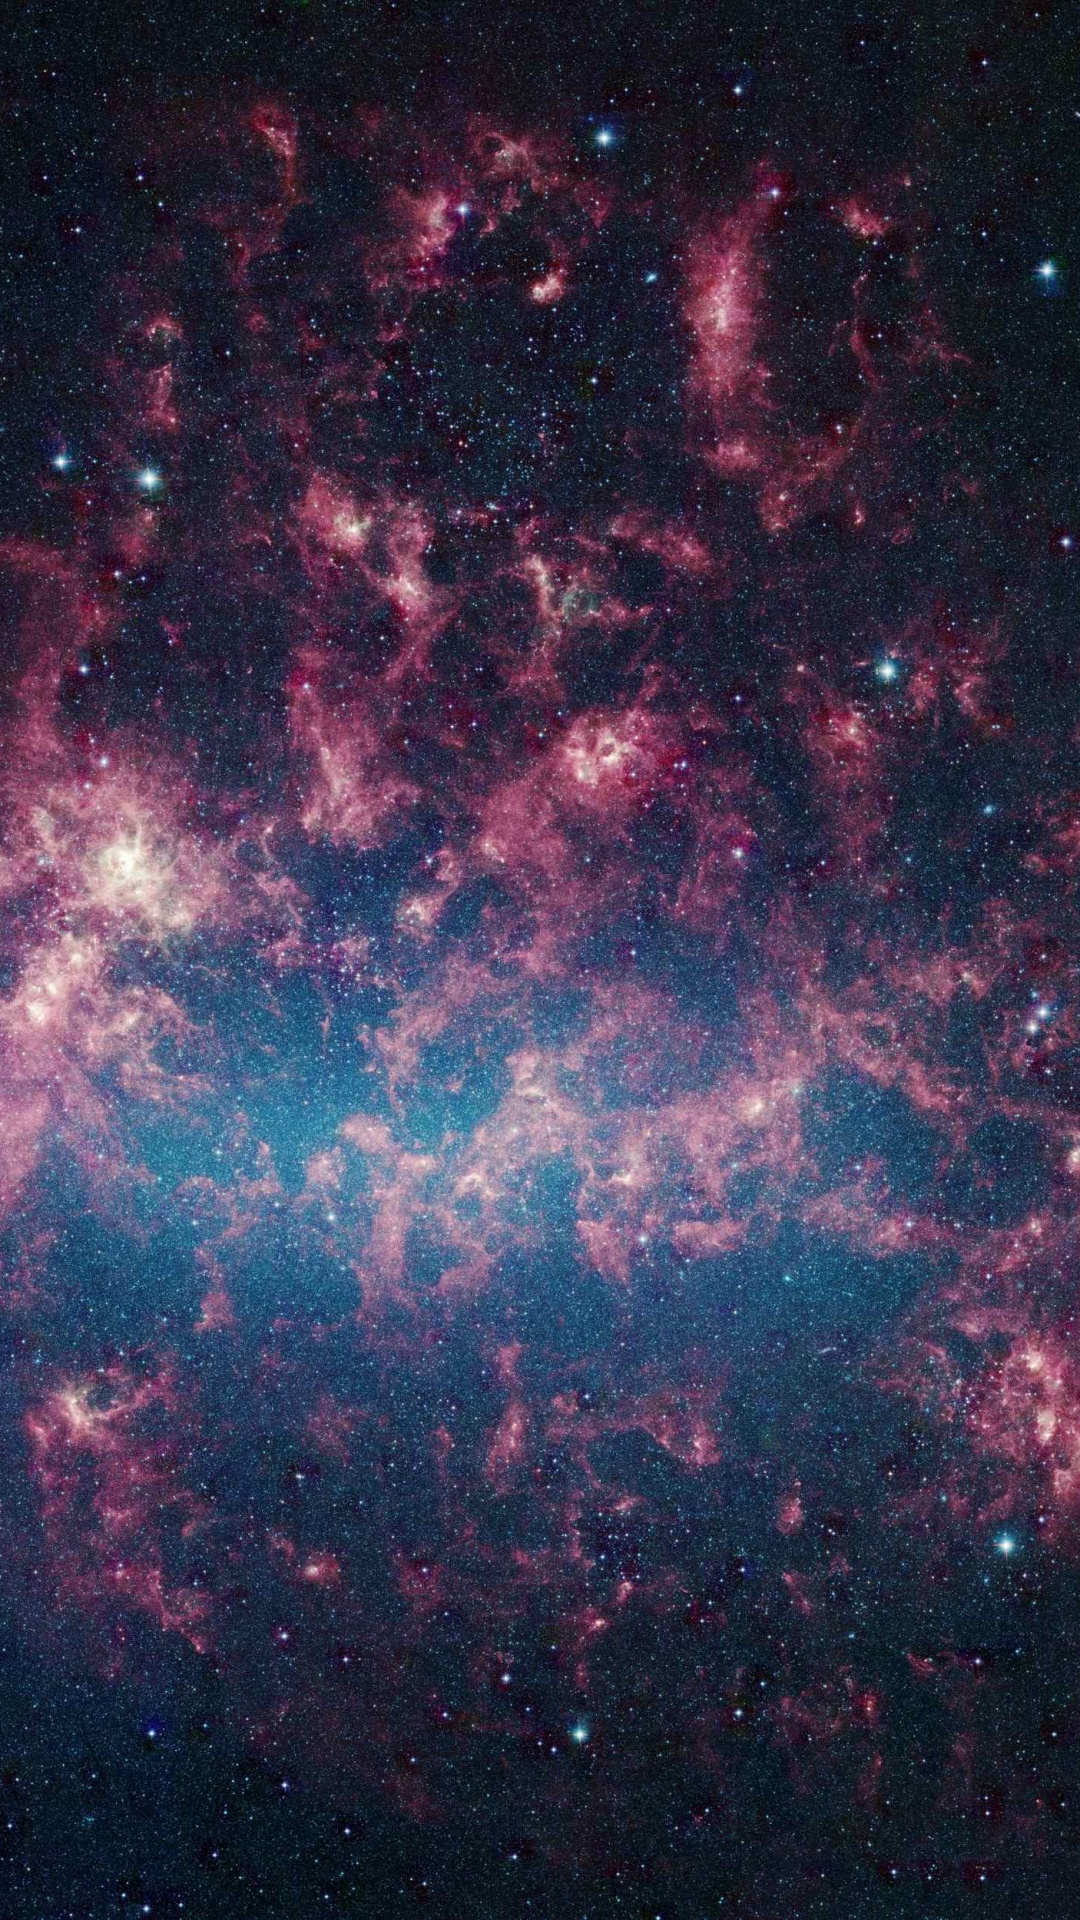 大麦哲伦星云, 银河系, 斯皮策太空望远镜, 麦哲伦星云, 天文学对象 壁纸 1080x1920 允许